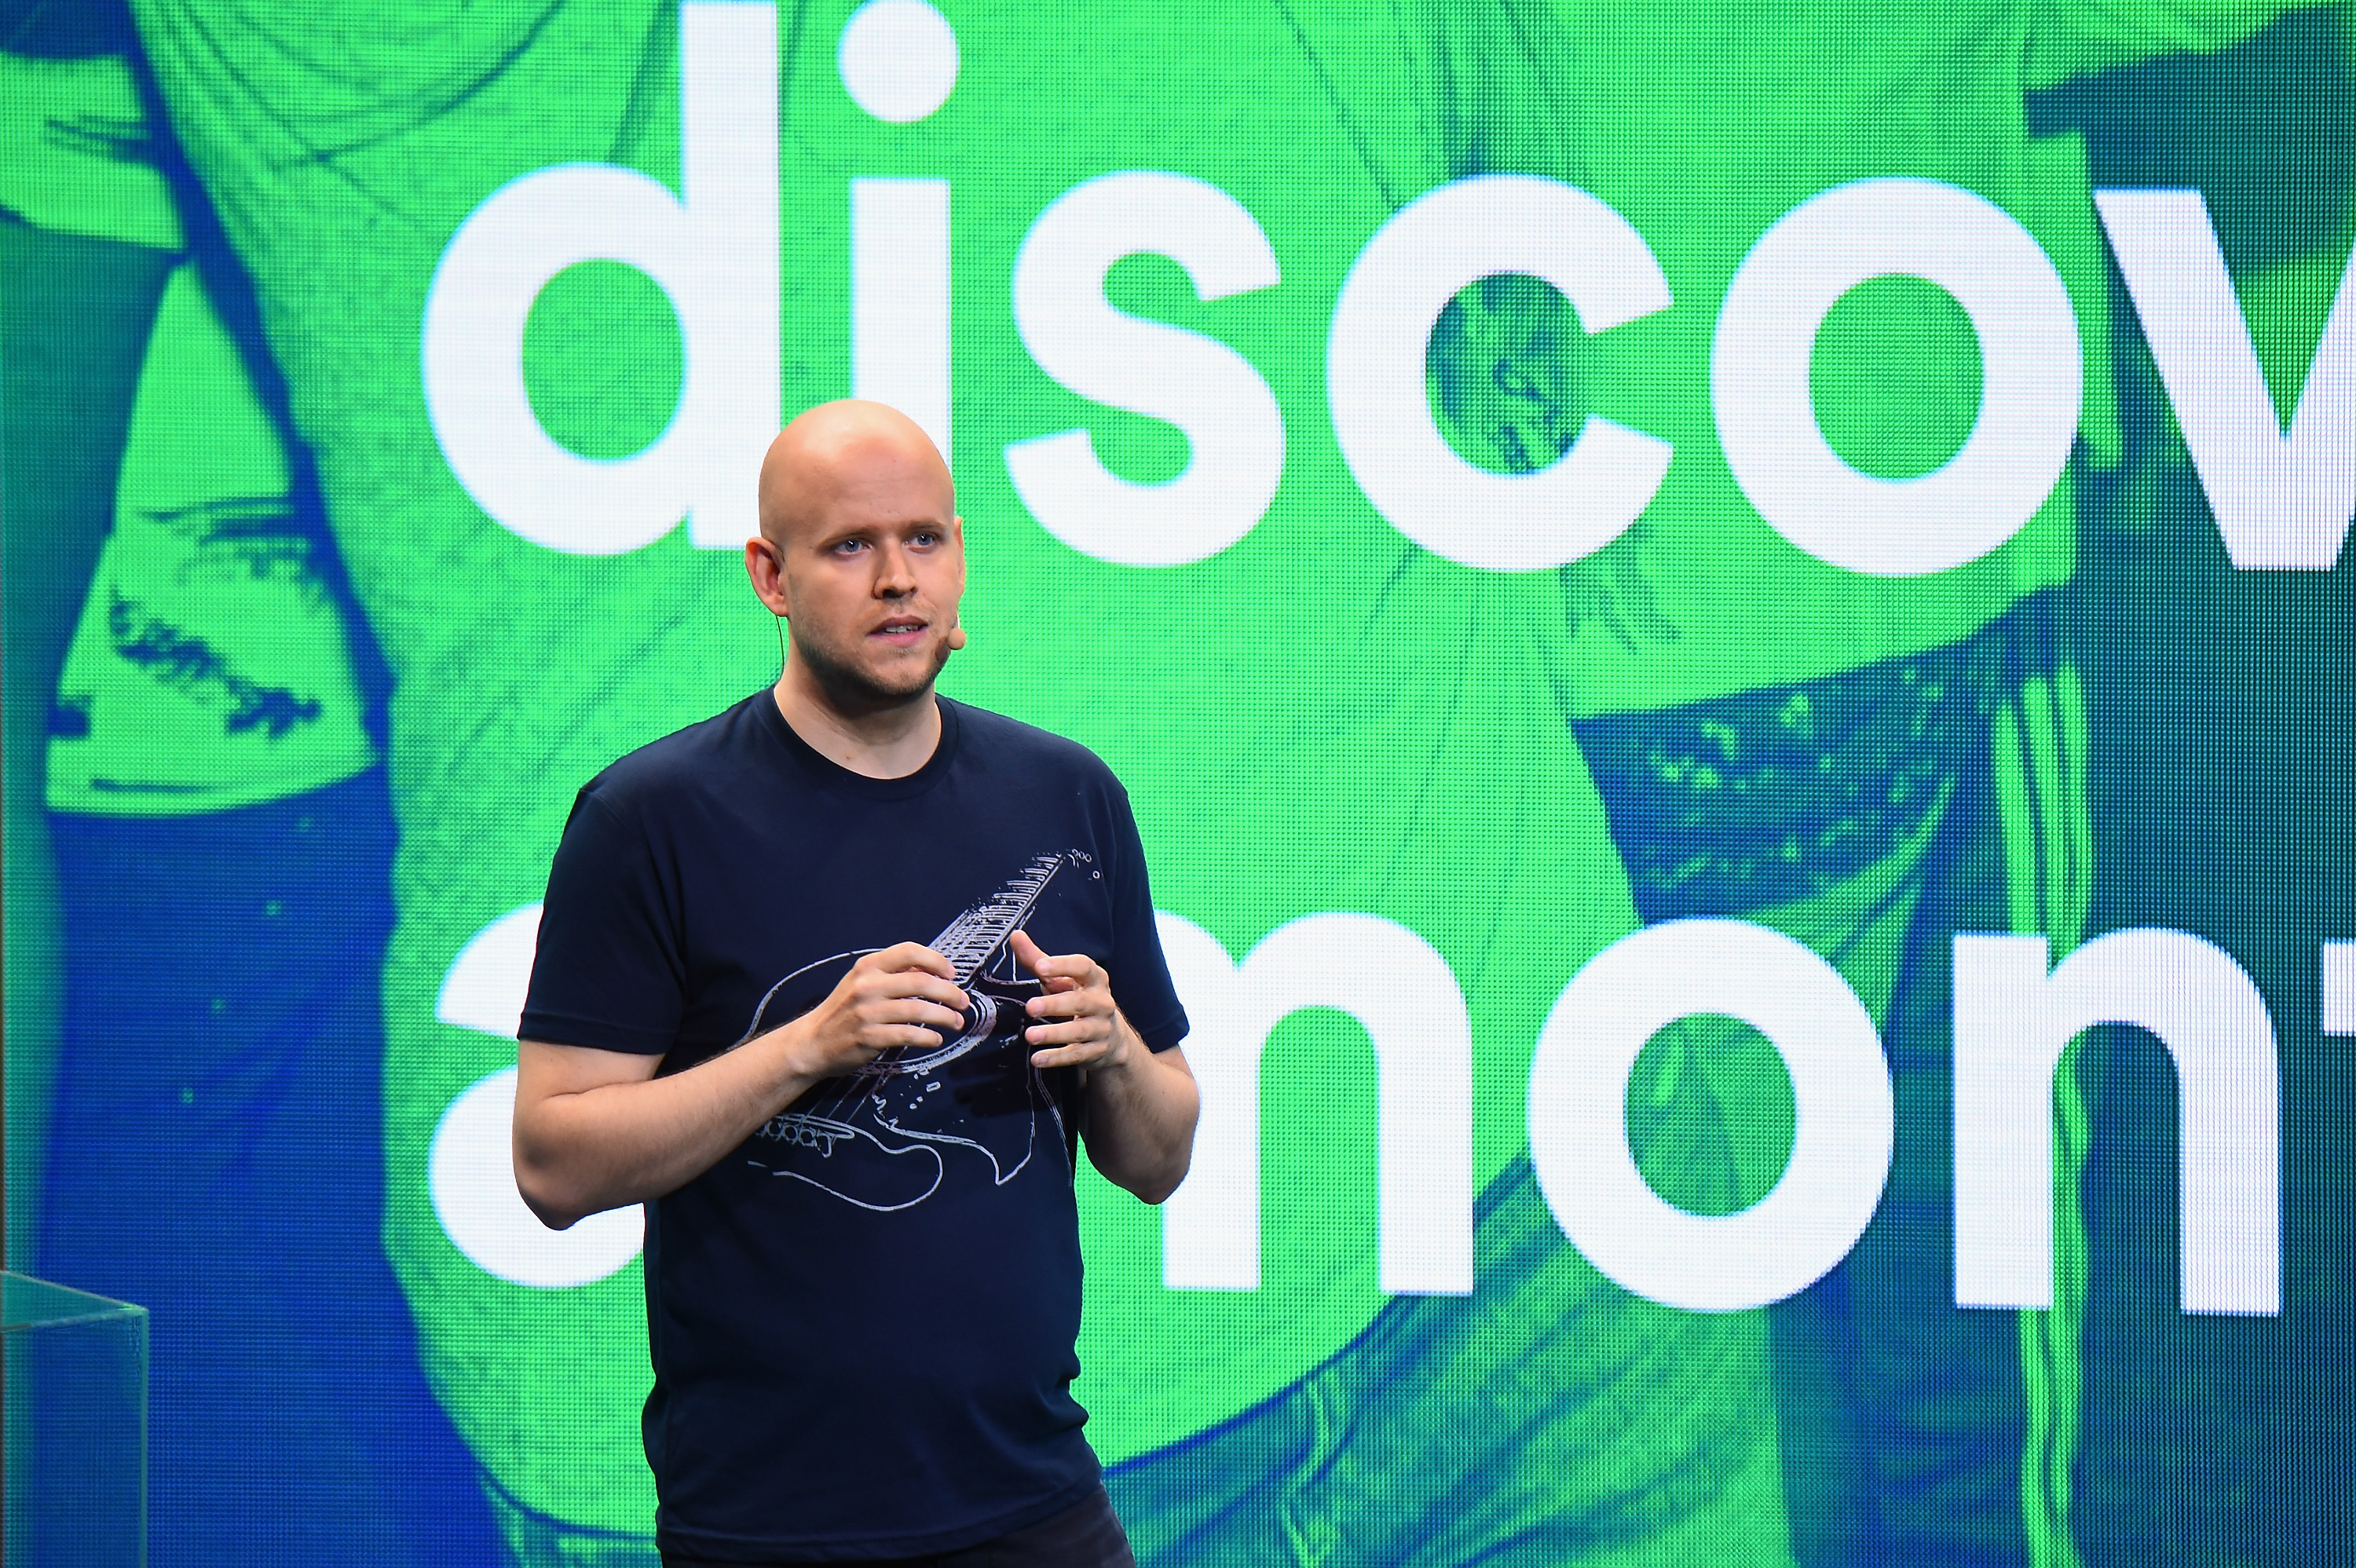 Utforsking av musikk er viktig for Spotify. Her ved toppsjef Daniel Ek under en tidligere anledning.